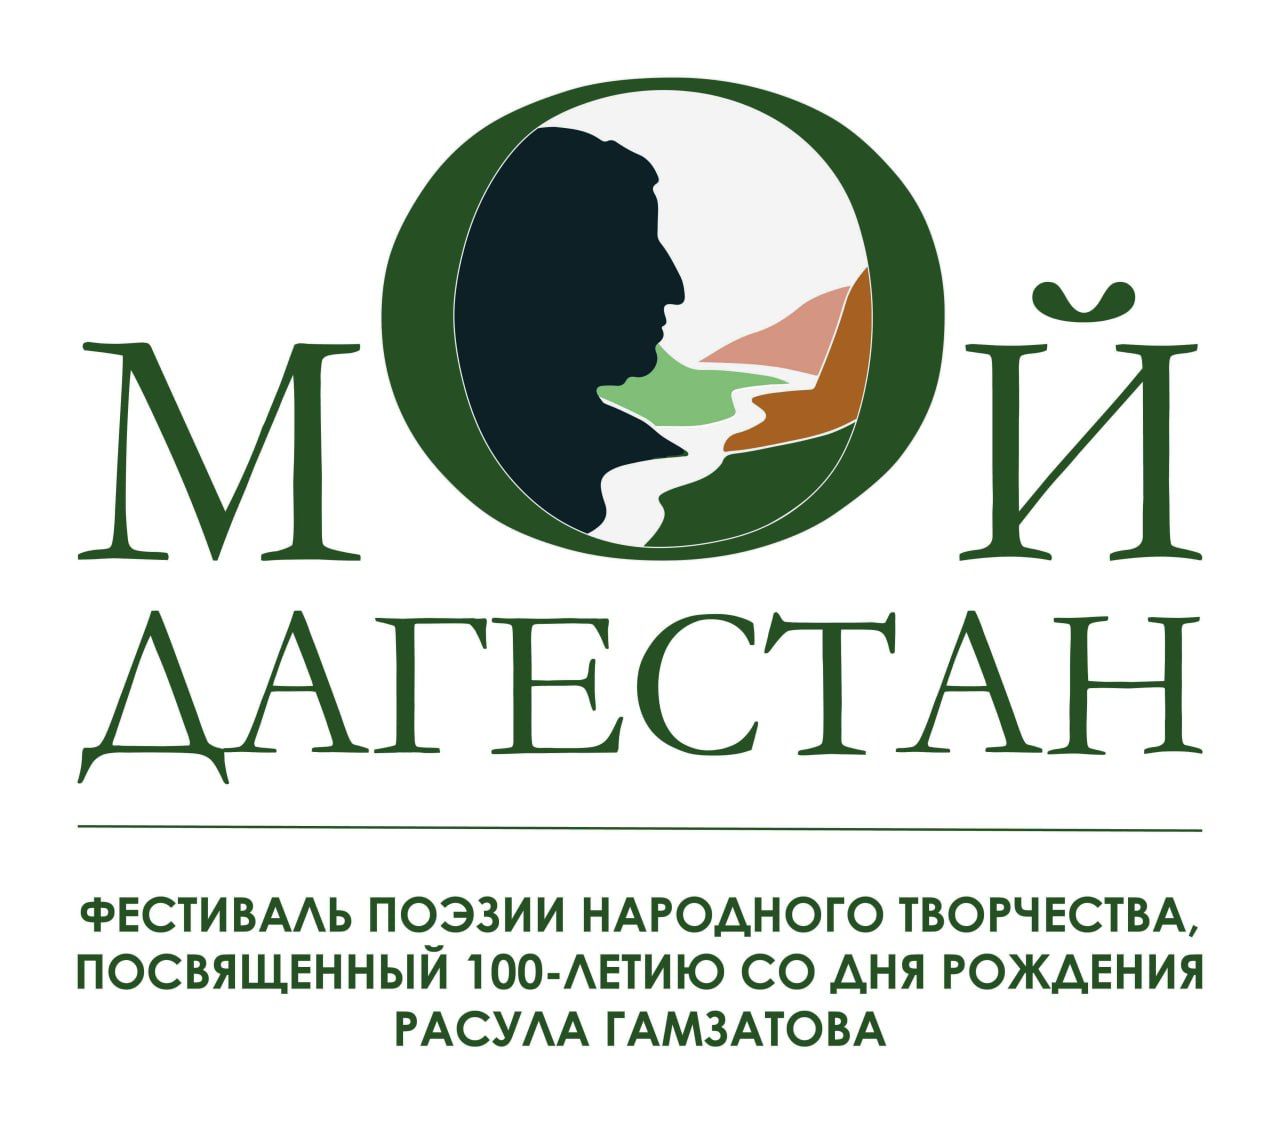 12 июня в Махачкале пройдет Фестиваль поэзии народного творчества «Мой Дагестан», посвященный 100-летию со дня рождения Р. Гамзатова.